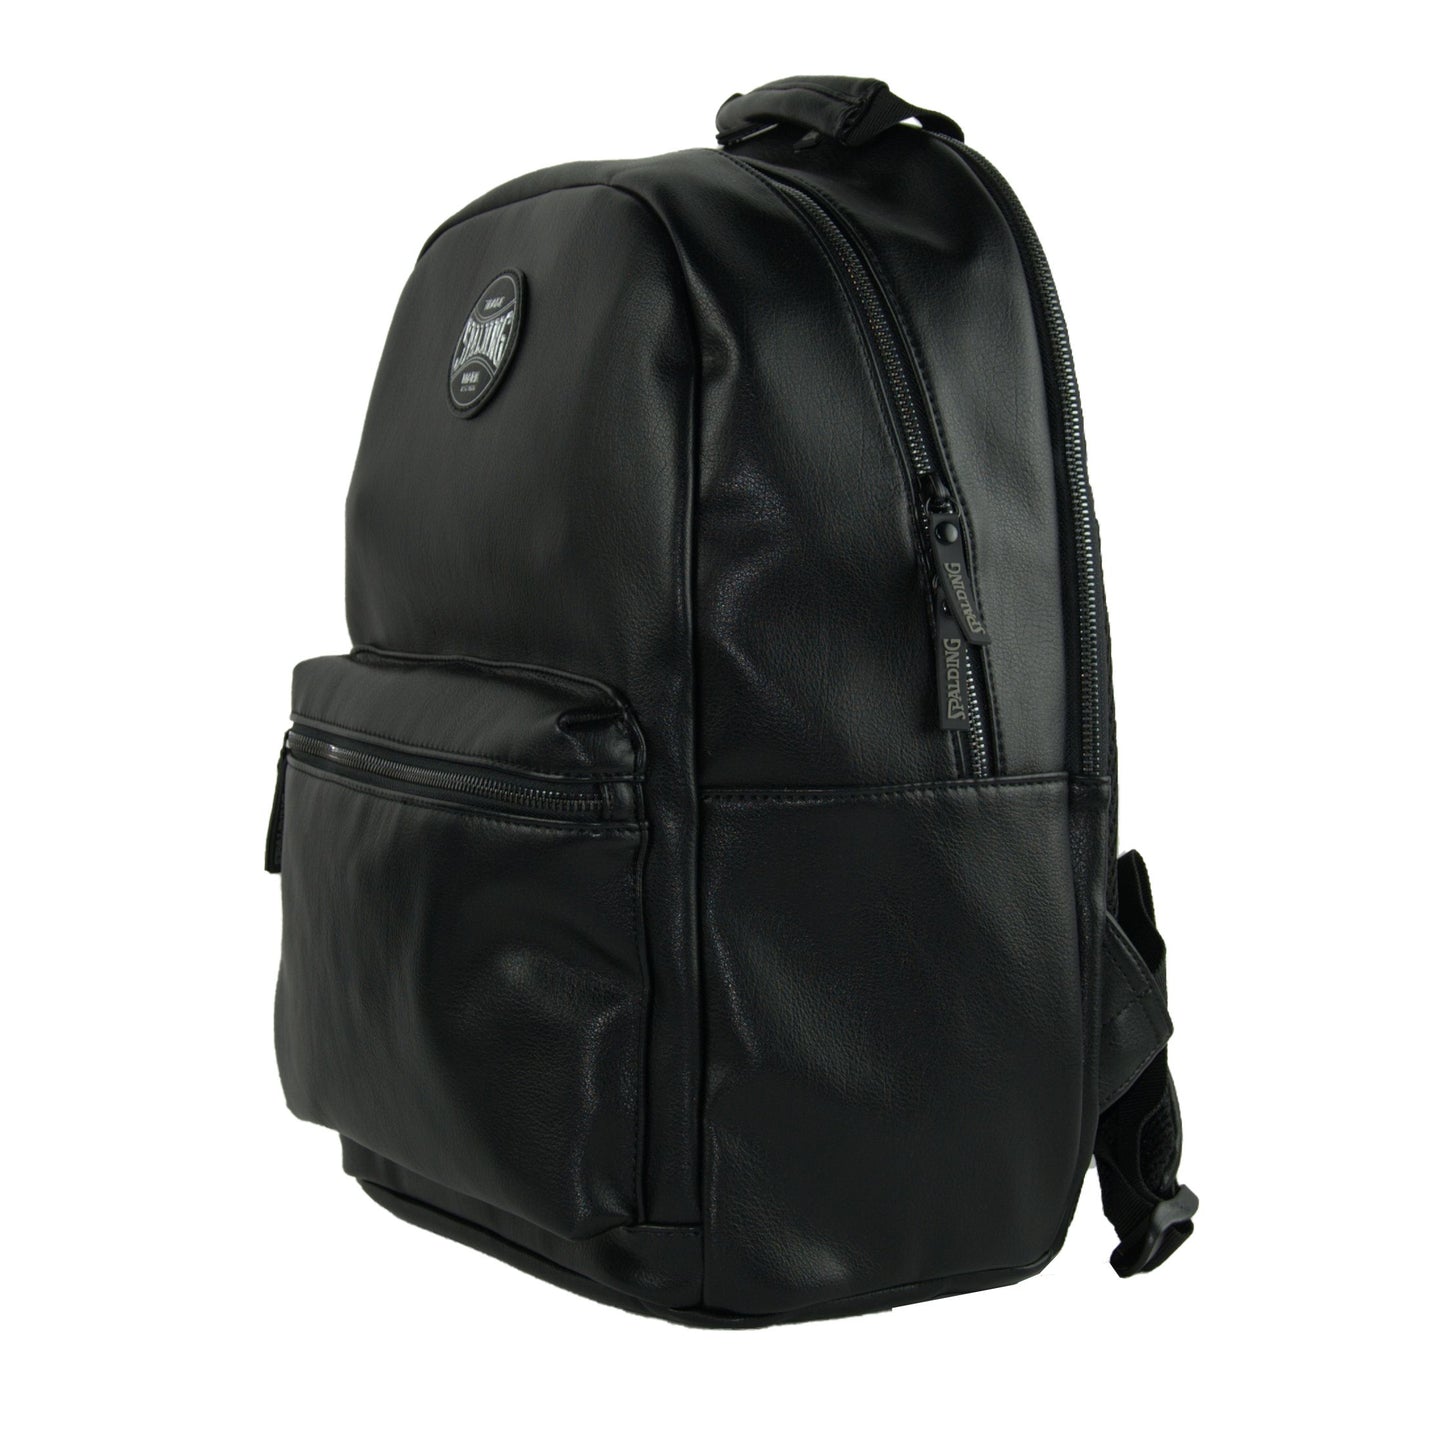 Chic Urban Play Off Backpack in Sleek Black